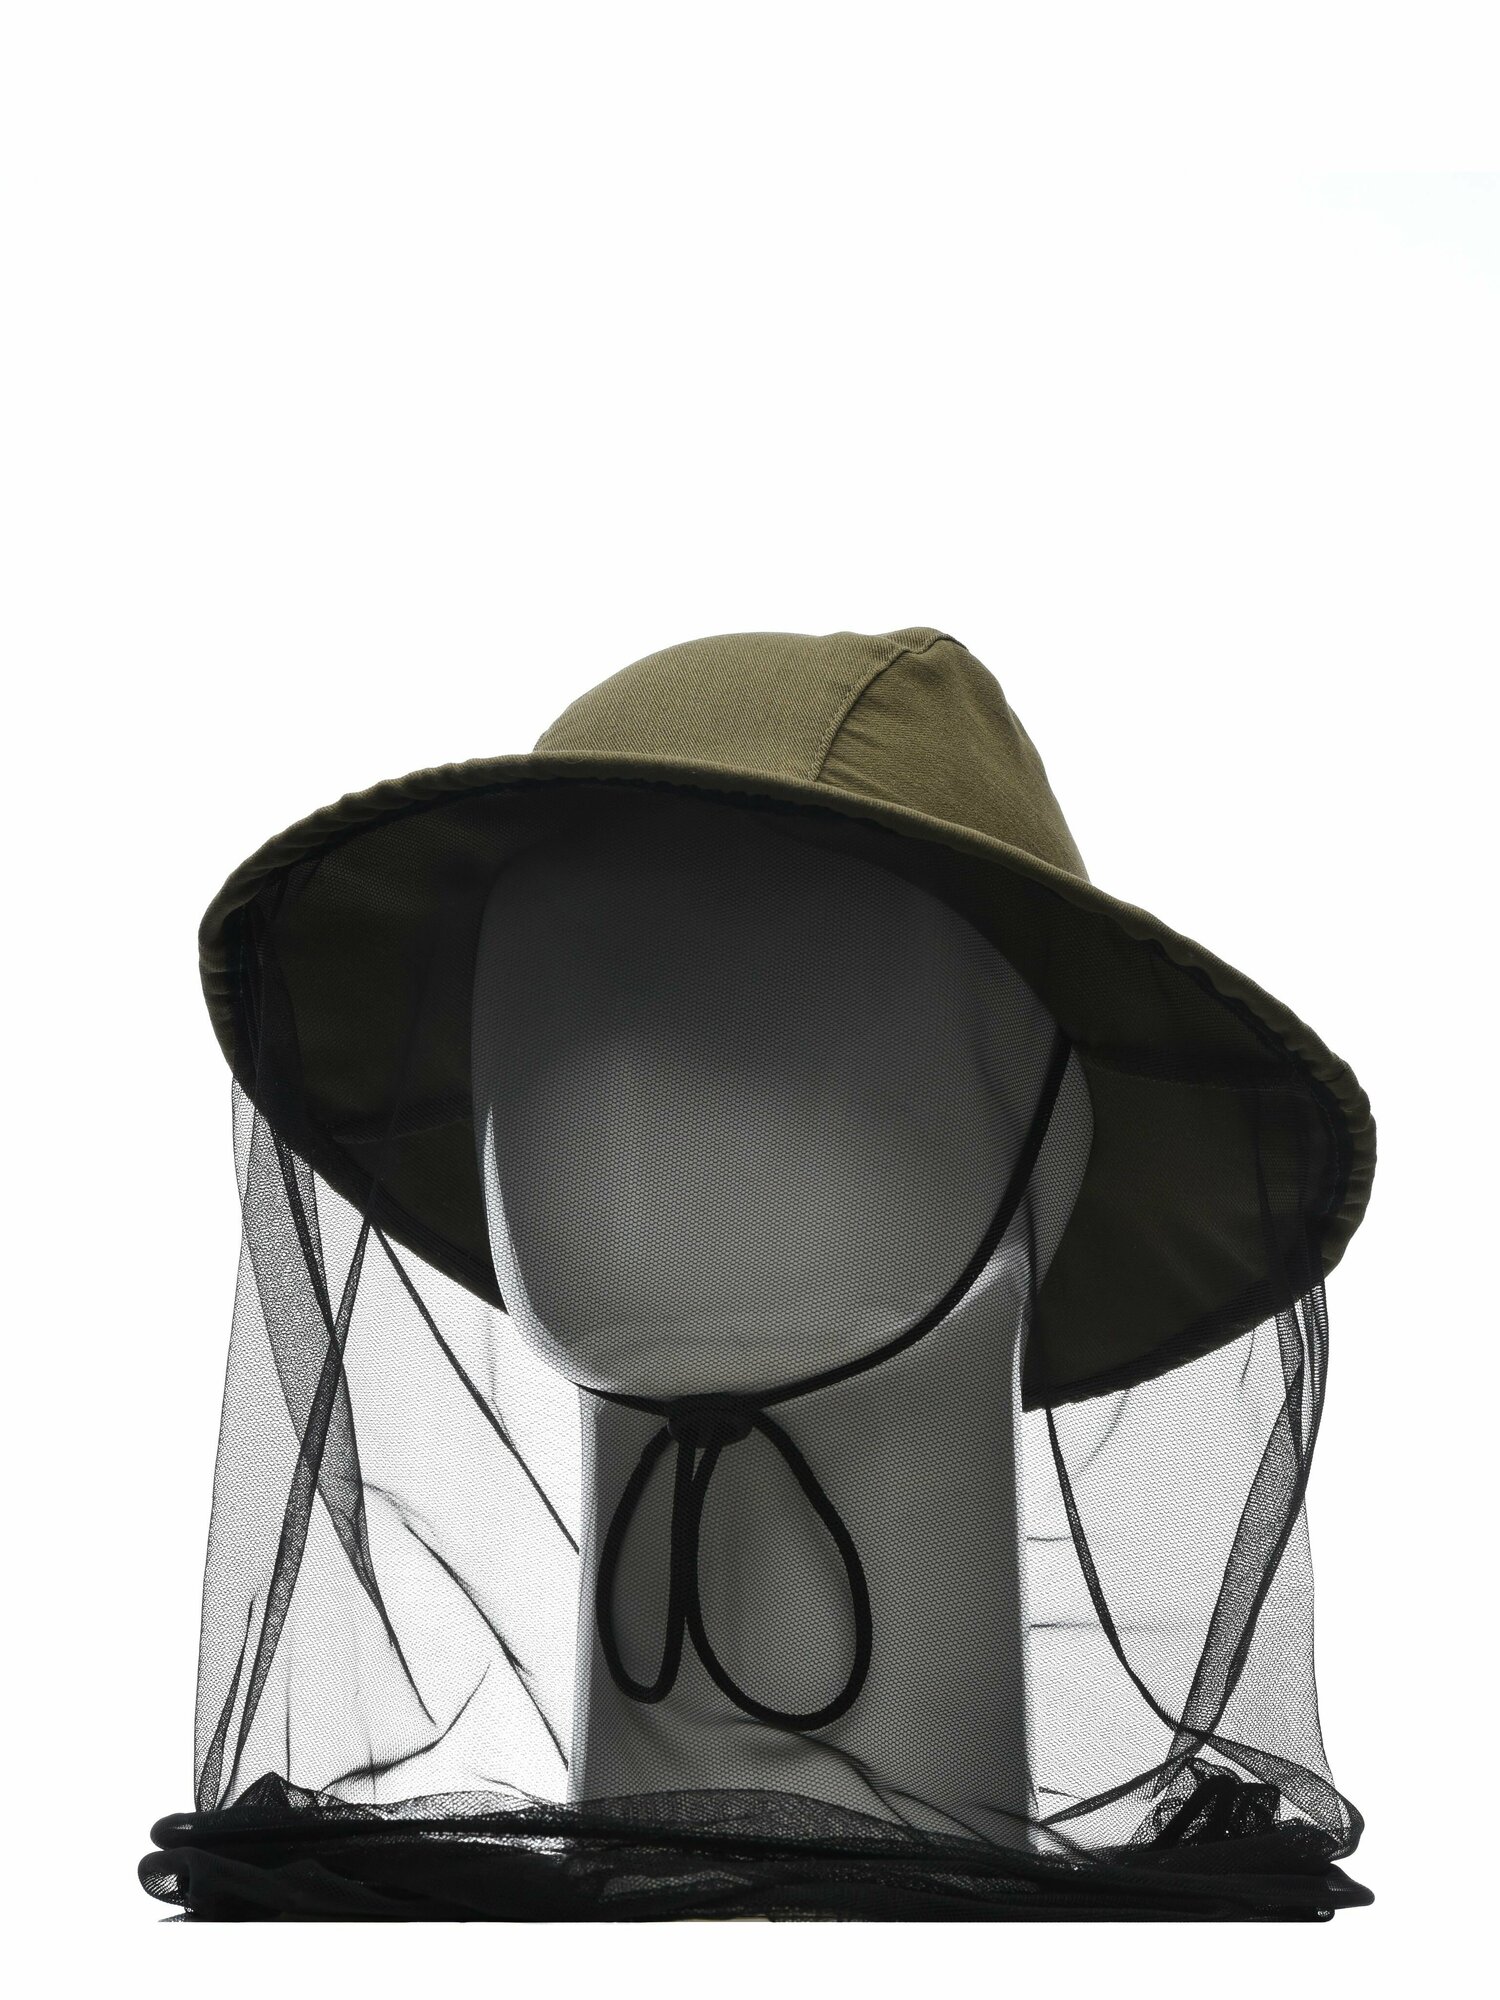 Панама мужская летняя солнцезащитная Huntsman для рыбалки и охоты с кольцом Антигнус, москитной сеткой, смесовая ткань, цвет хаки (р.58)